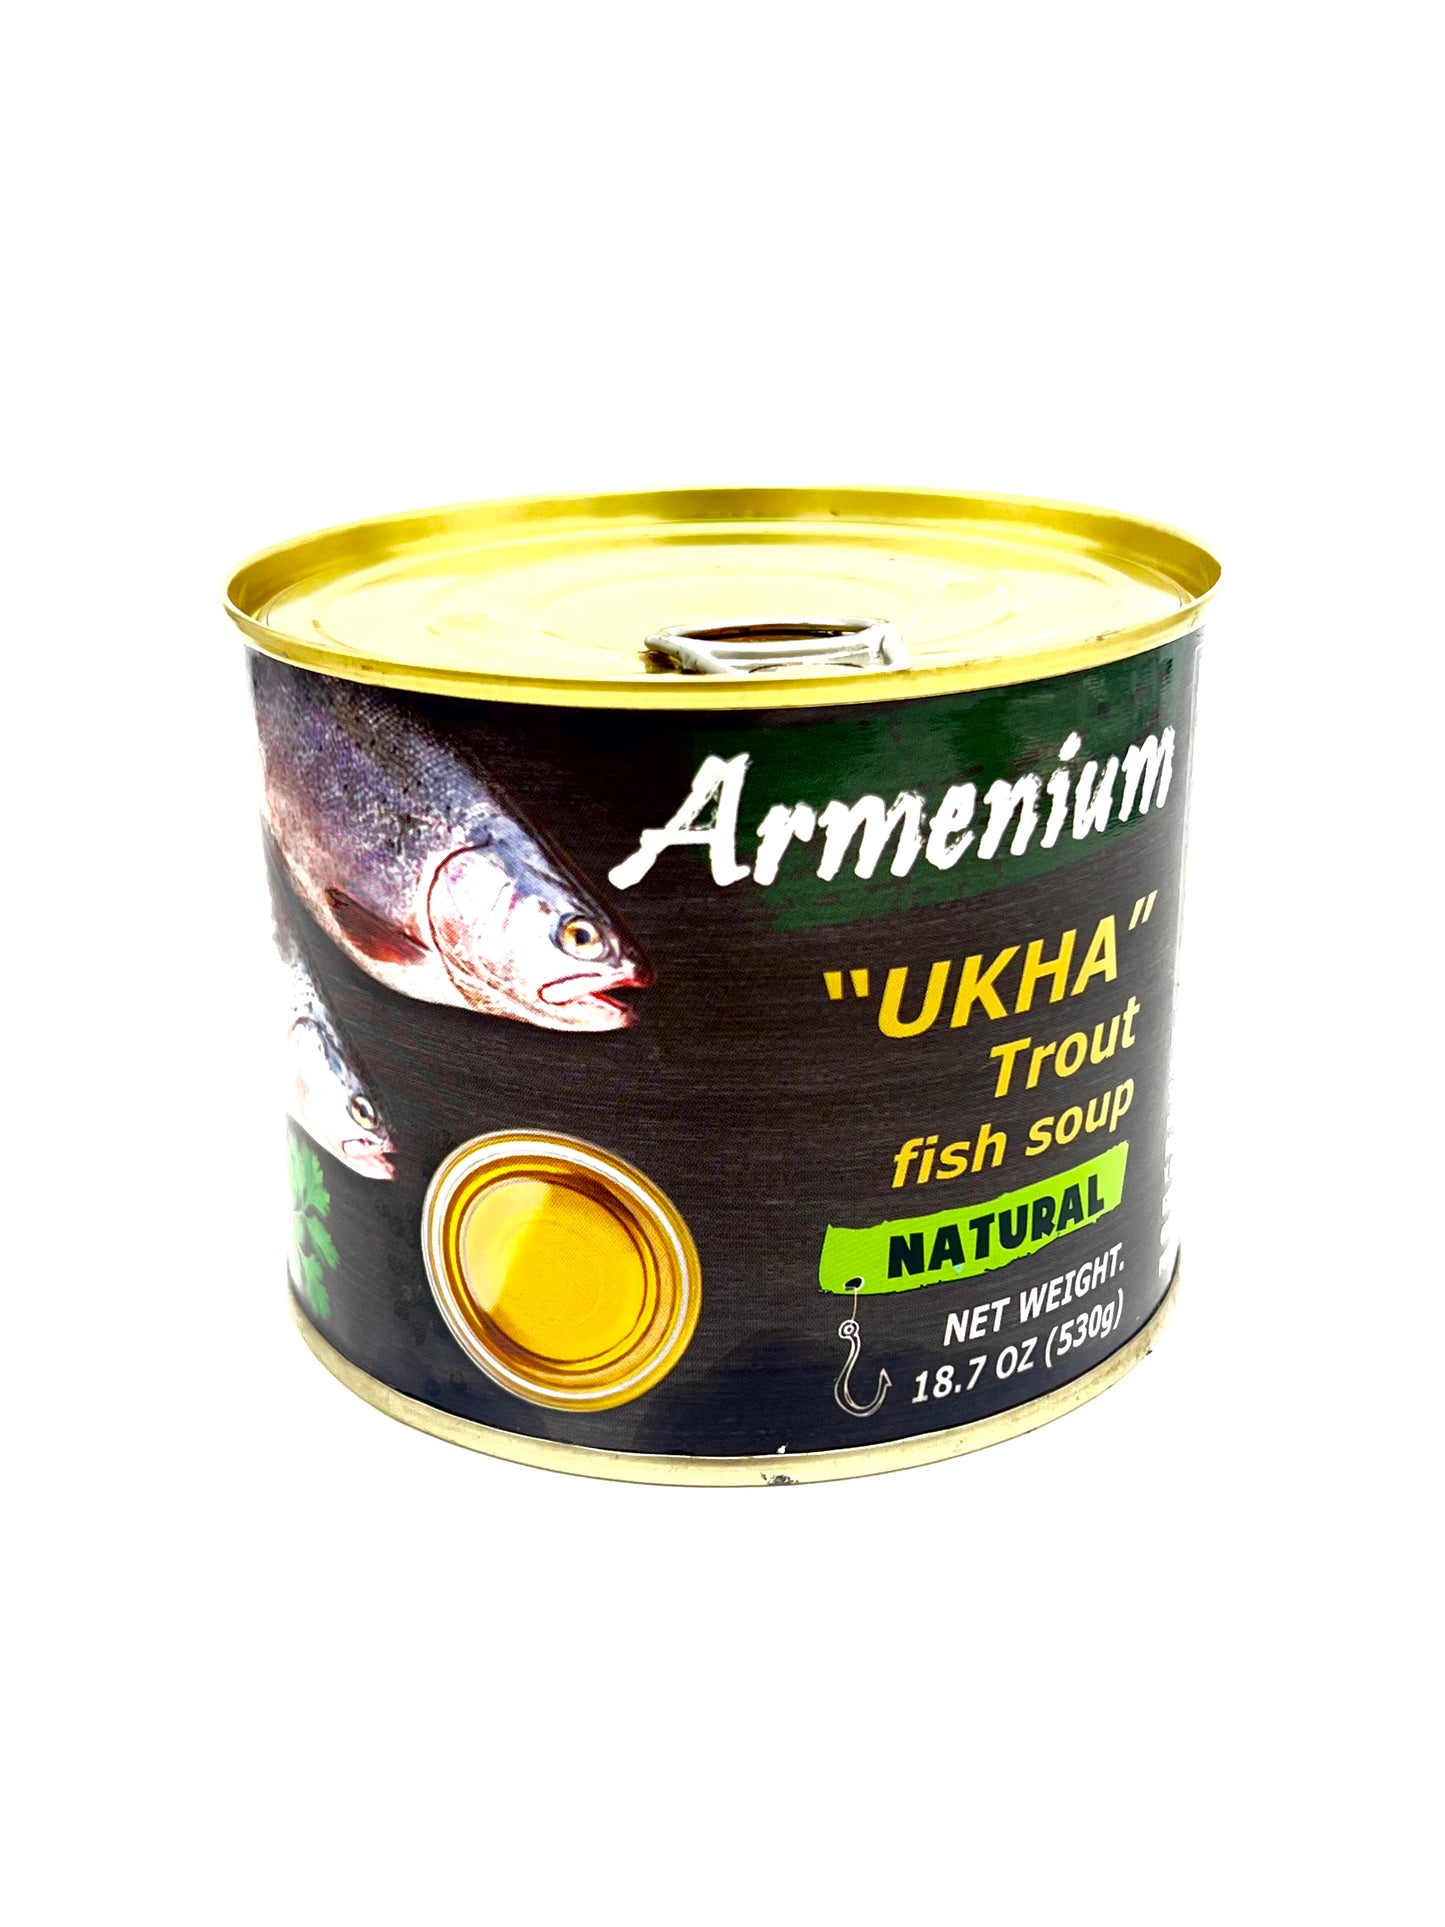 Armenium "Ukha" Trout Fish Soup, 530g